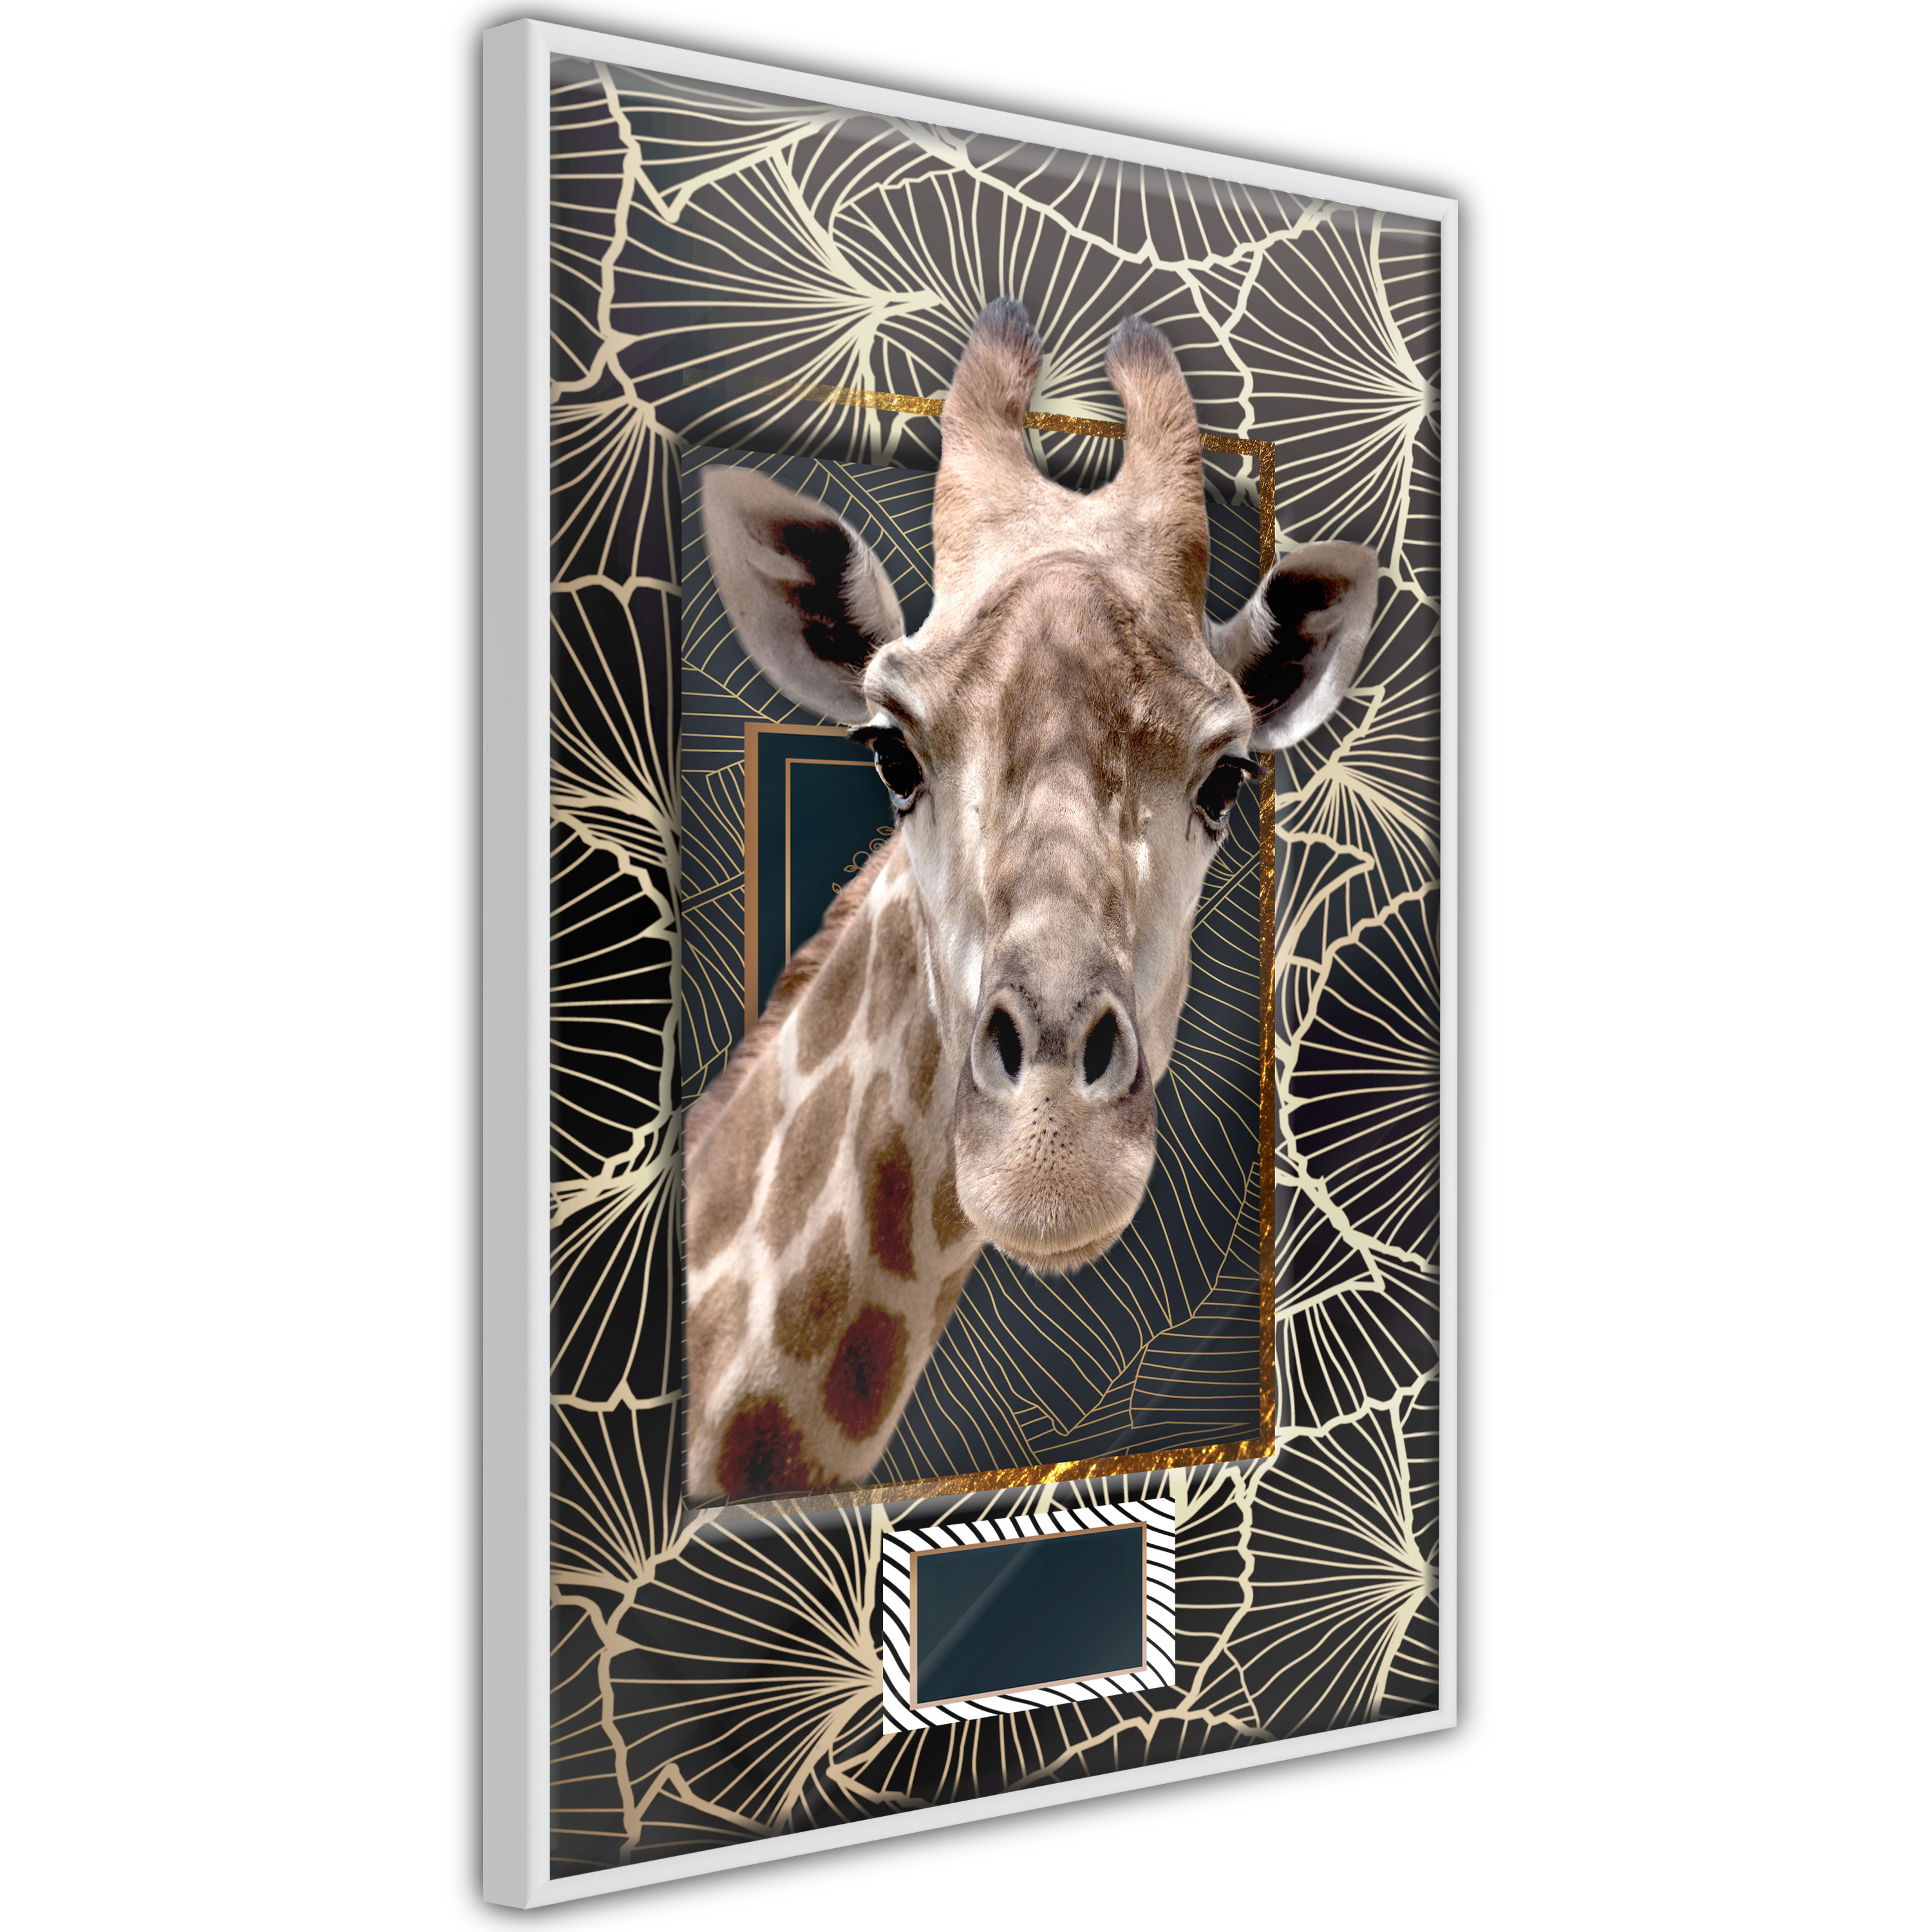 Poster - Giraffe in the Frame - 20x30